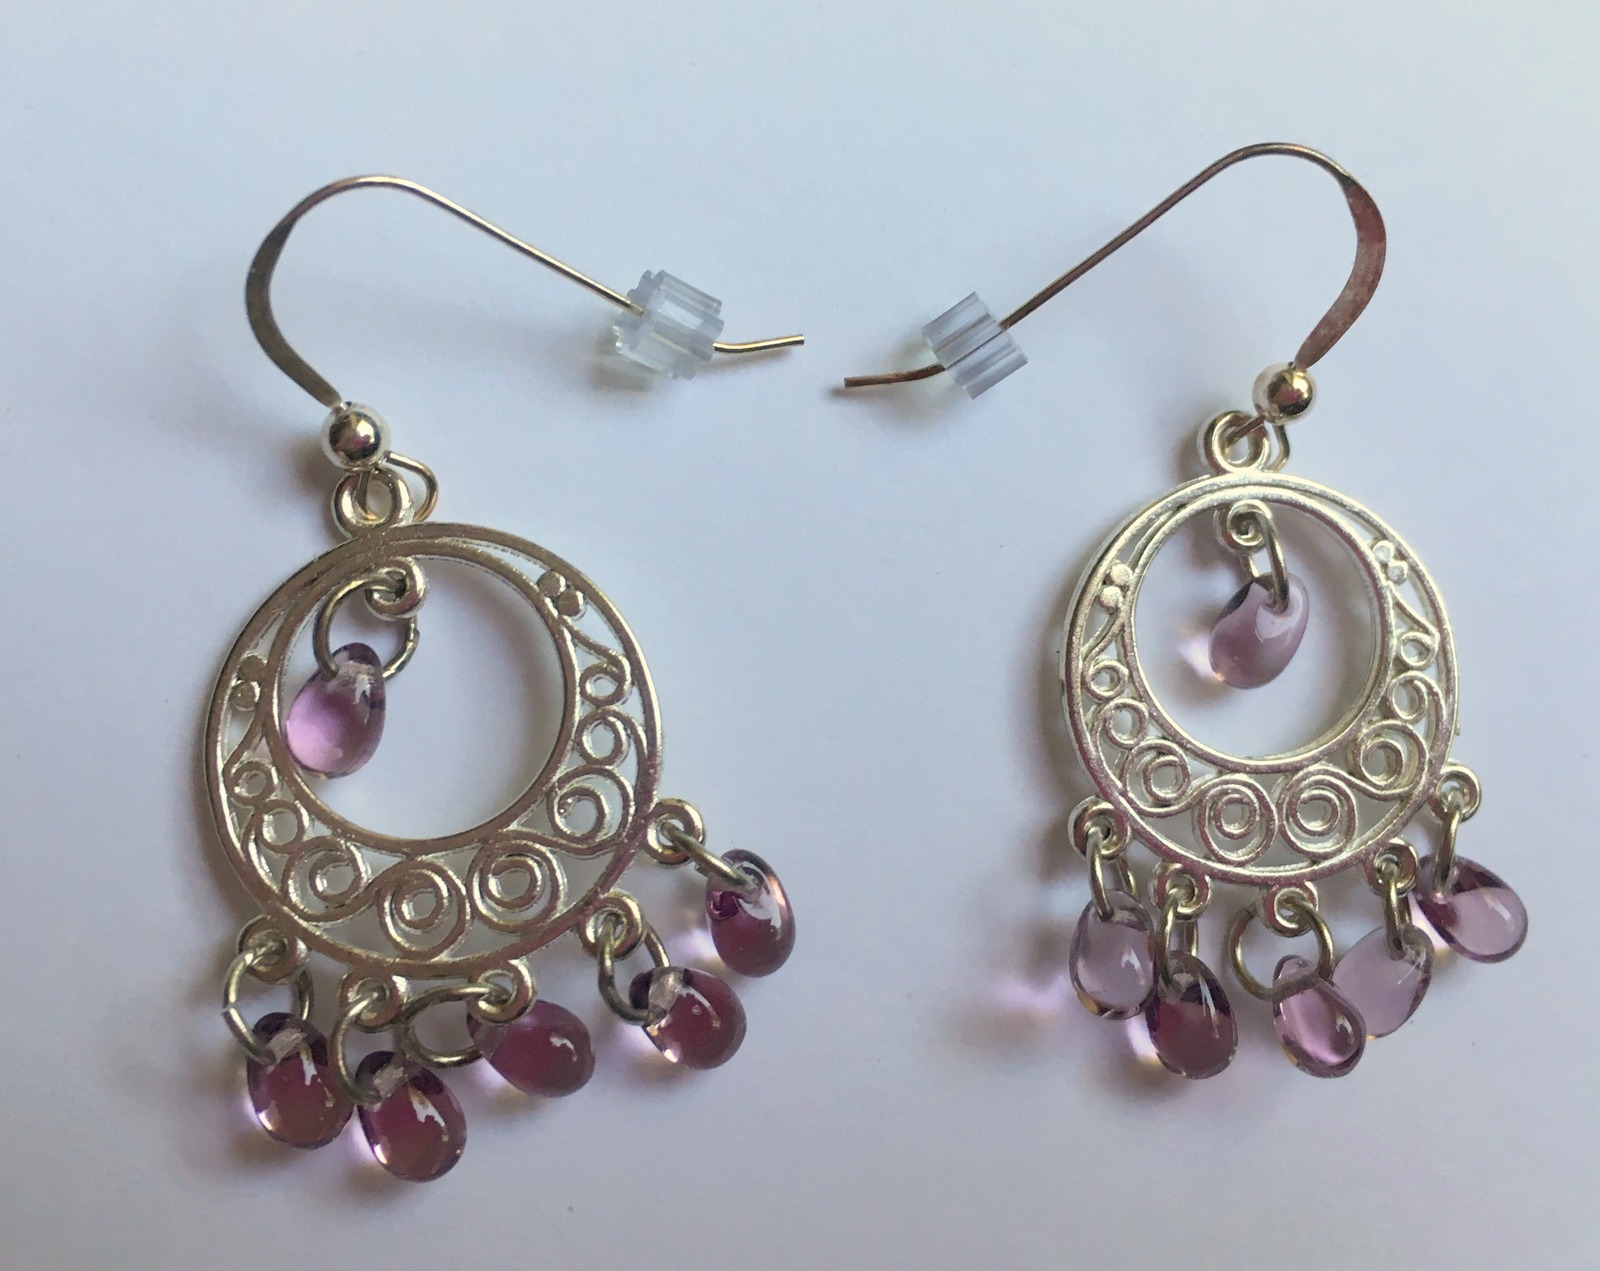 Lavender Chandelier Hook Earrings, Czech Glass Beads, Drop Earrings, Gift Idea - $12.49